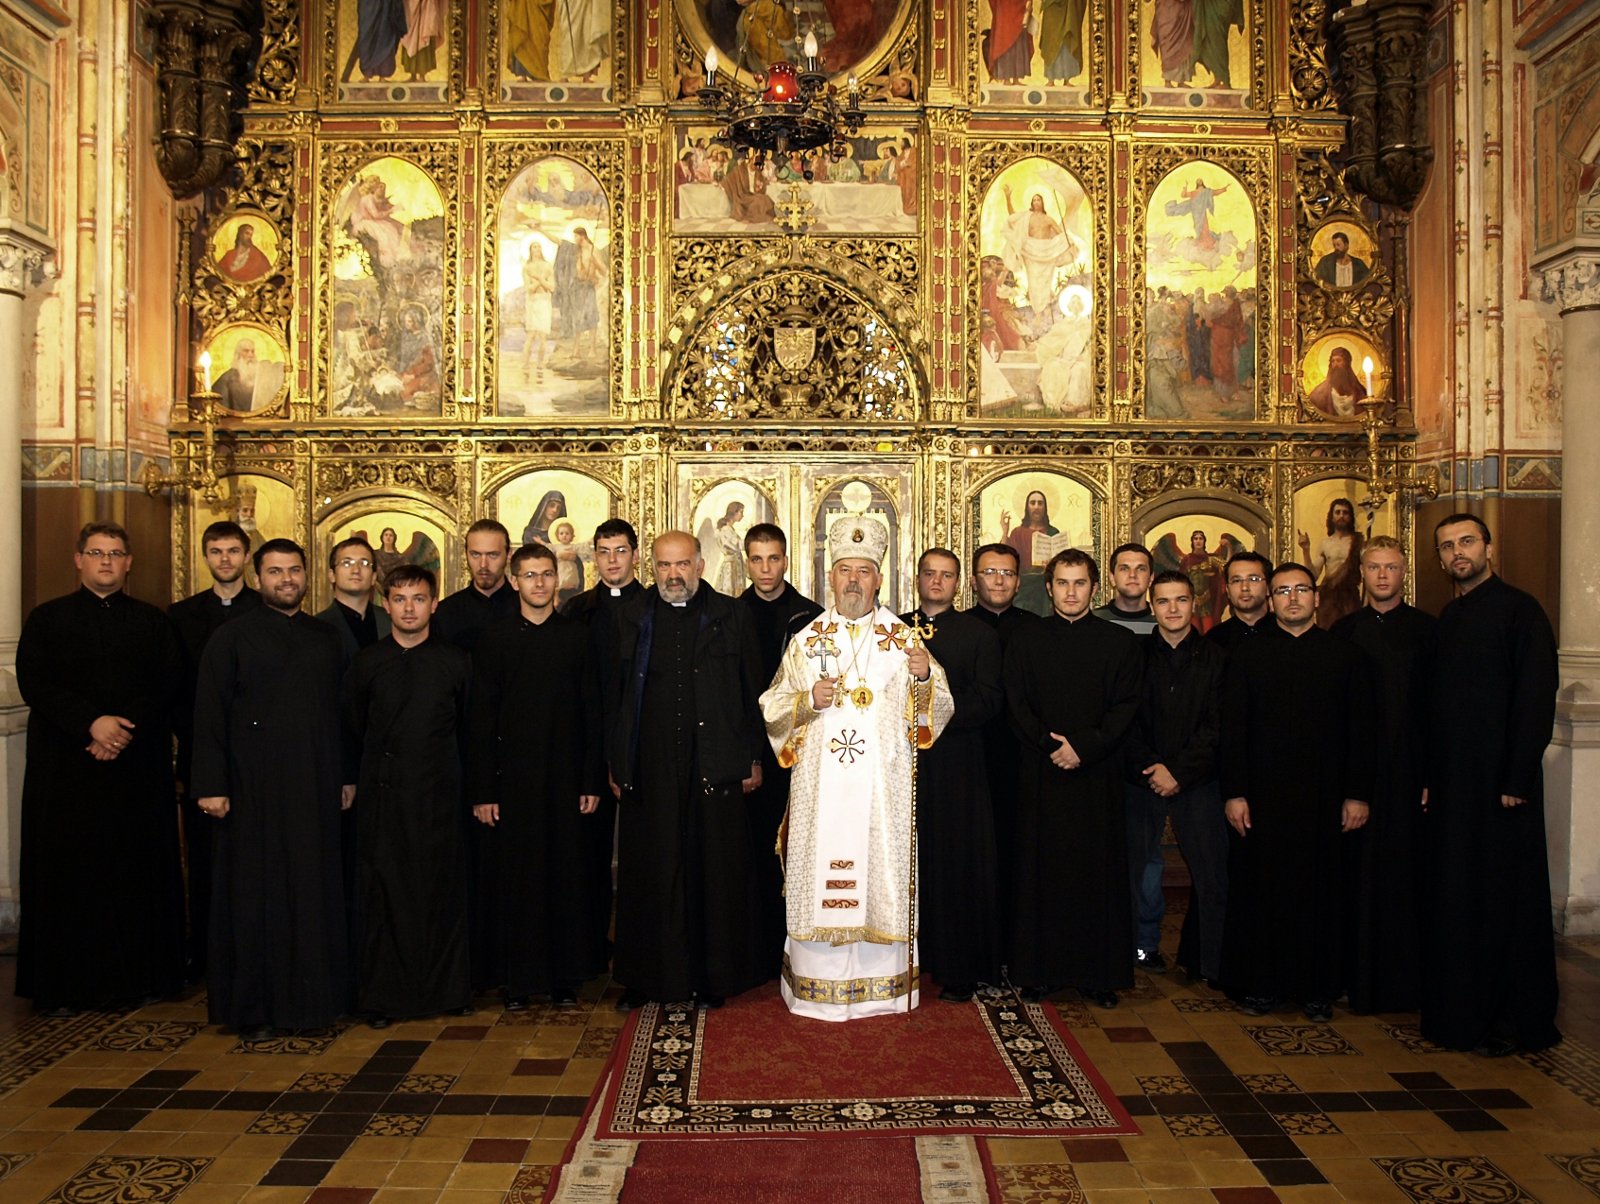 Bogoslovi križevačke eparhije sa svojim vladikom, mons. Nikolom Kekićem na duhovnim vježbama, 2009.